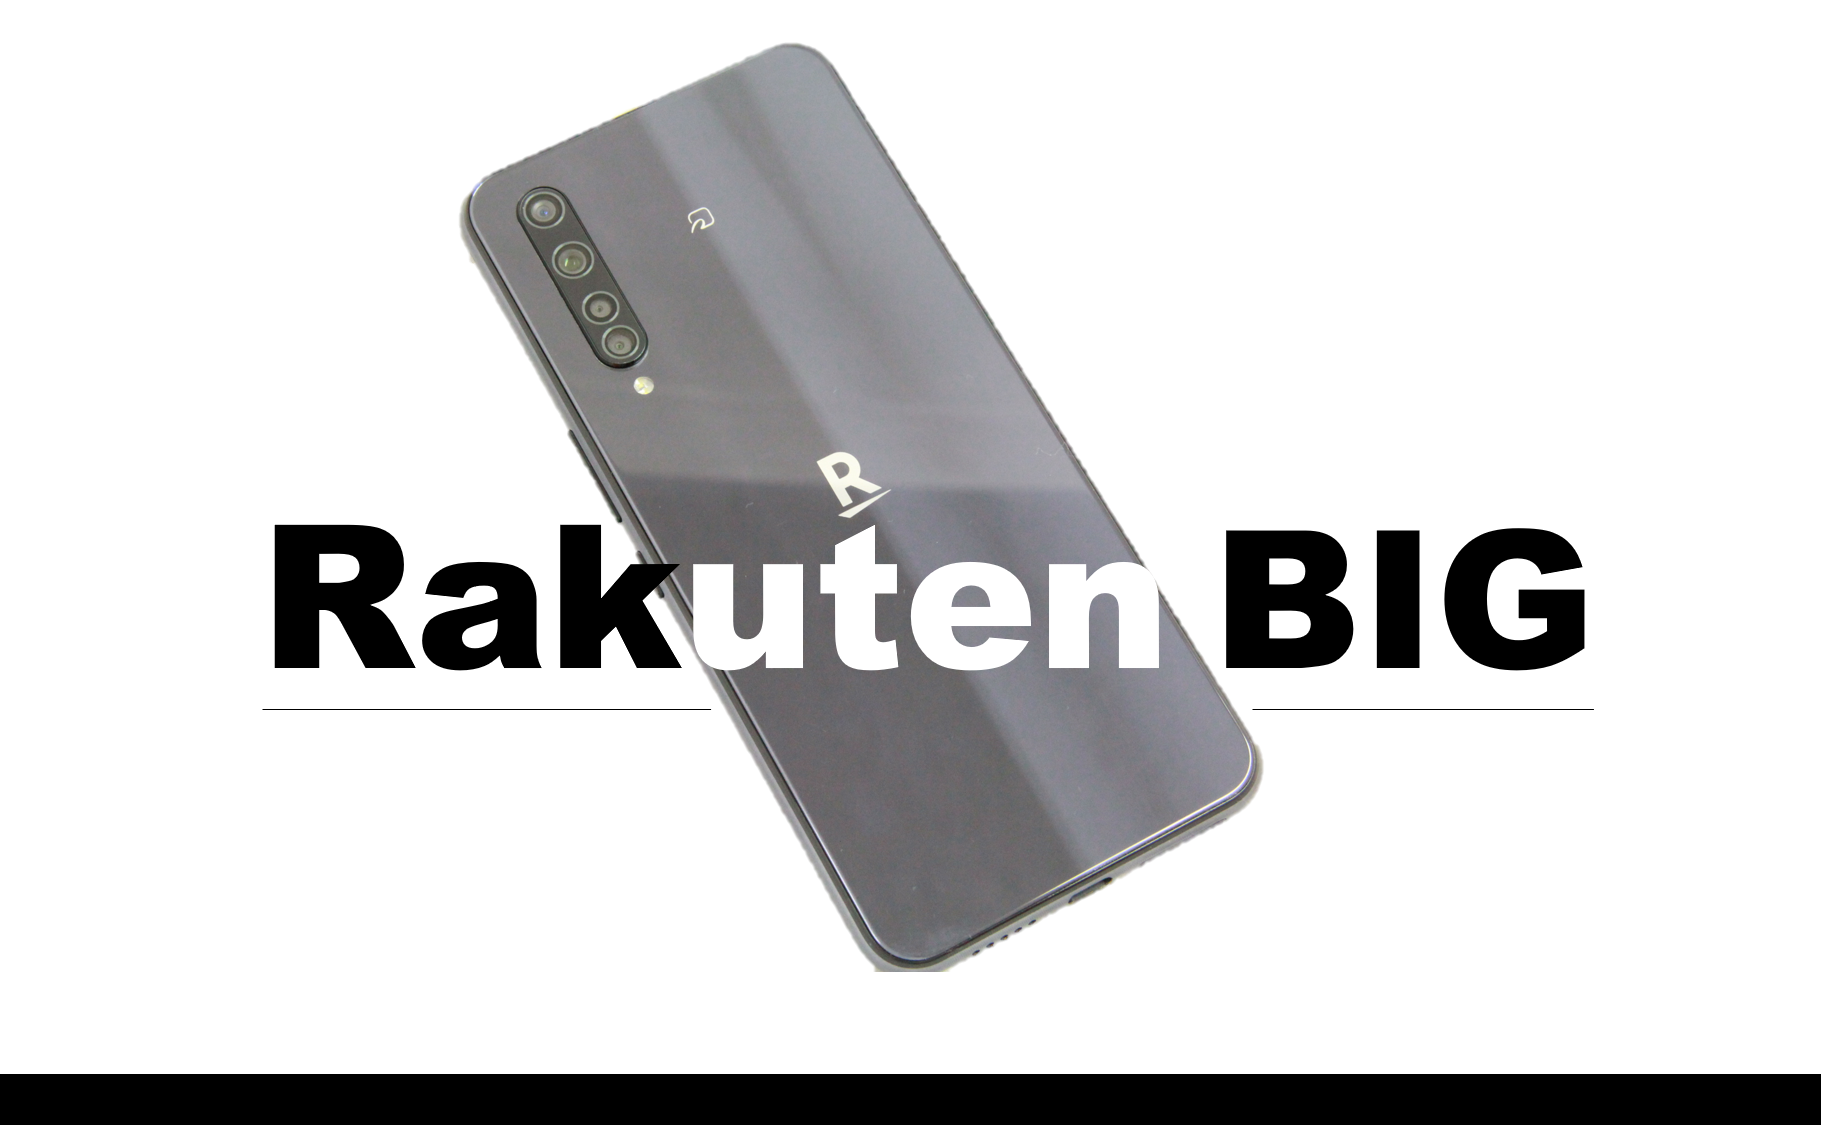 スマートフォン/携帯電話 スマートフォン本体 楽天モバイル5Gスマホ「Rakuten BIG」実機レビュー｜スペック・カメラ 